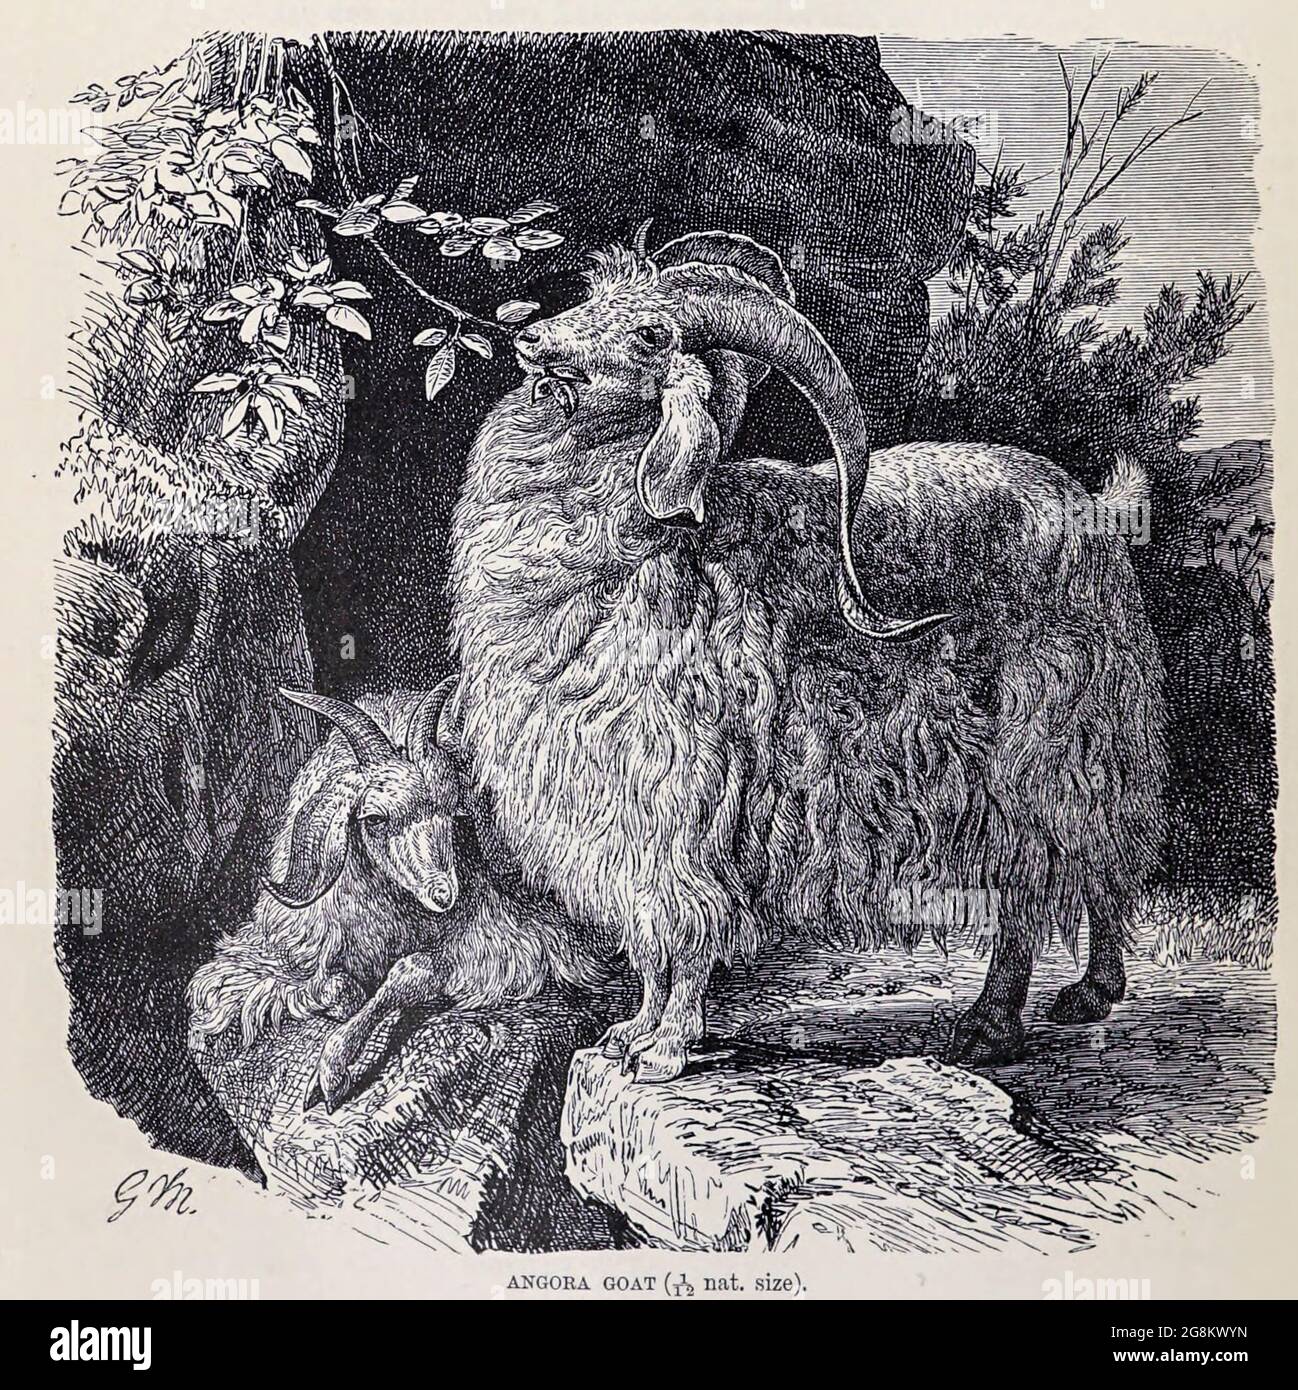 Die Angora Ziege ist eine Rasse von domestizierten Ziege, historisch bekannt als Angora. Angora-Ziegen produzieren die glänzende Faser, die als Mohair bekannt ist. Aus dem Buch ' Royal Natural History ' Band 2 herausgegeben von Richard Lydekker, veröffentlicht in London von Frederick Warne & Co im Jahr 1893-1894 Stockfoto